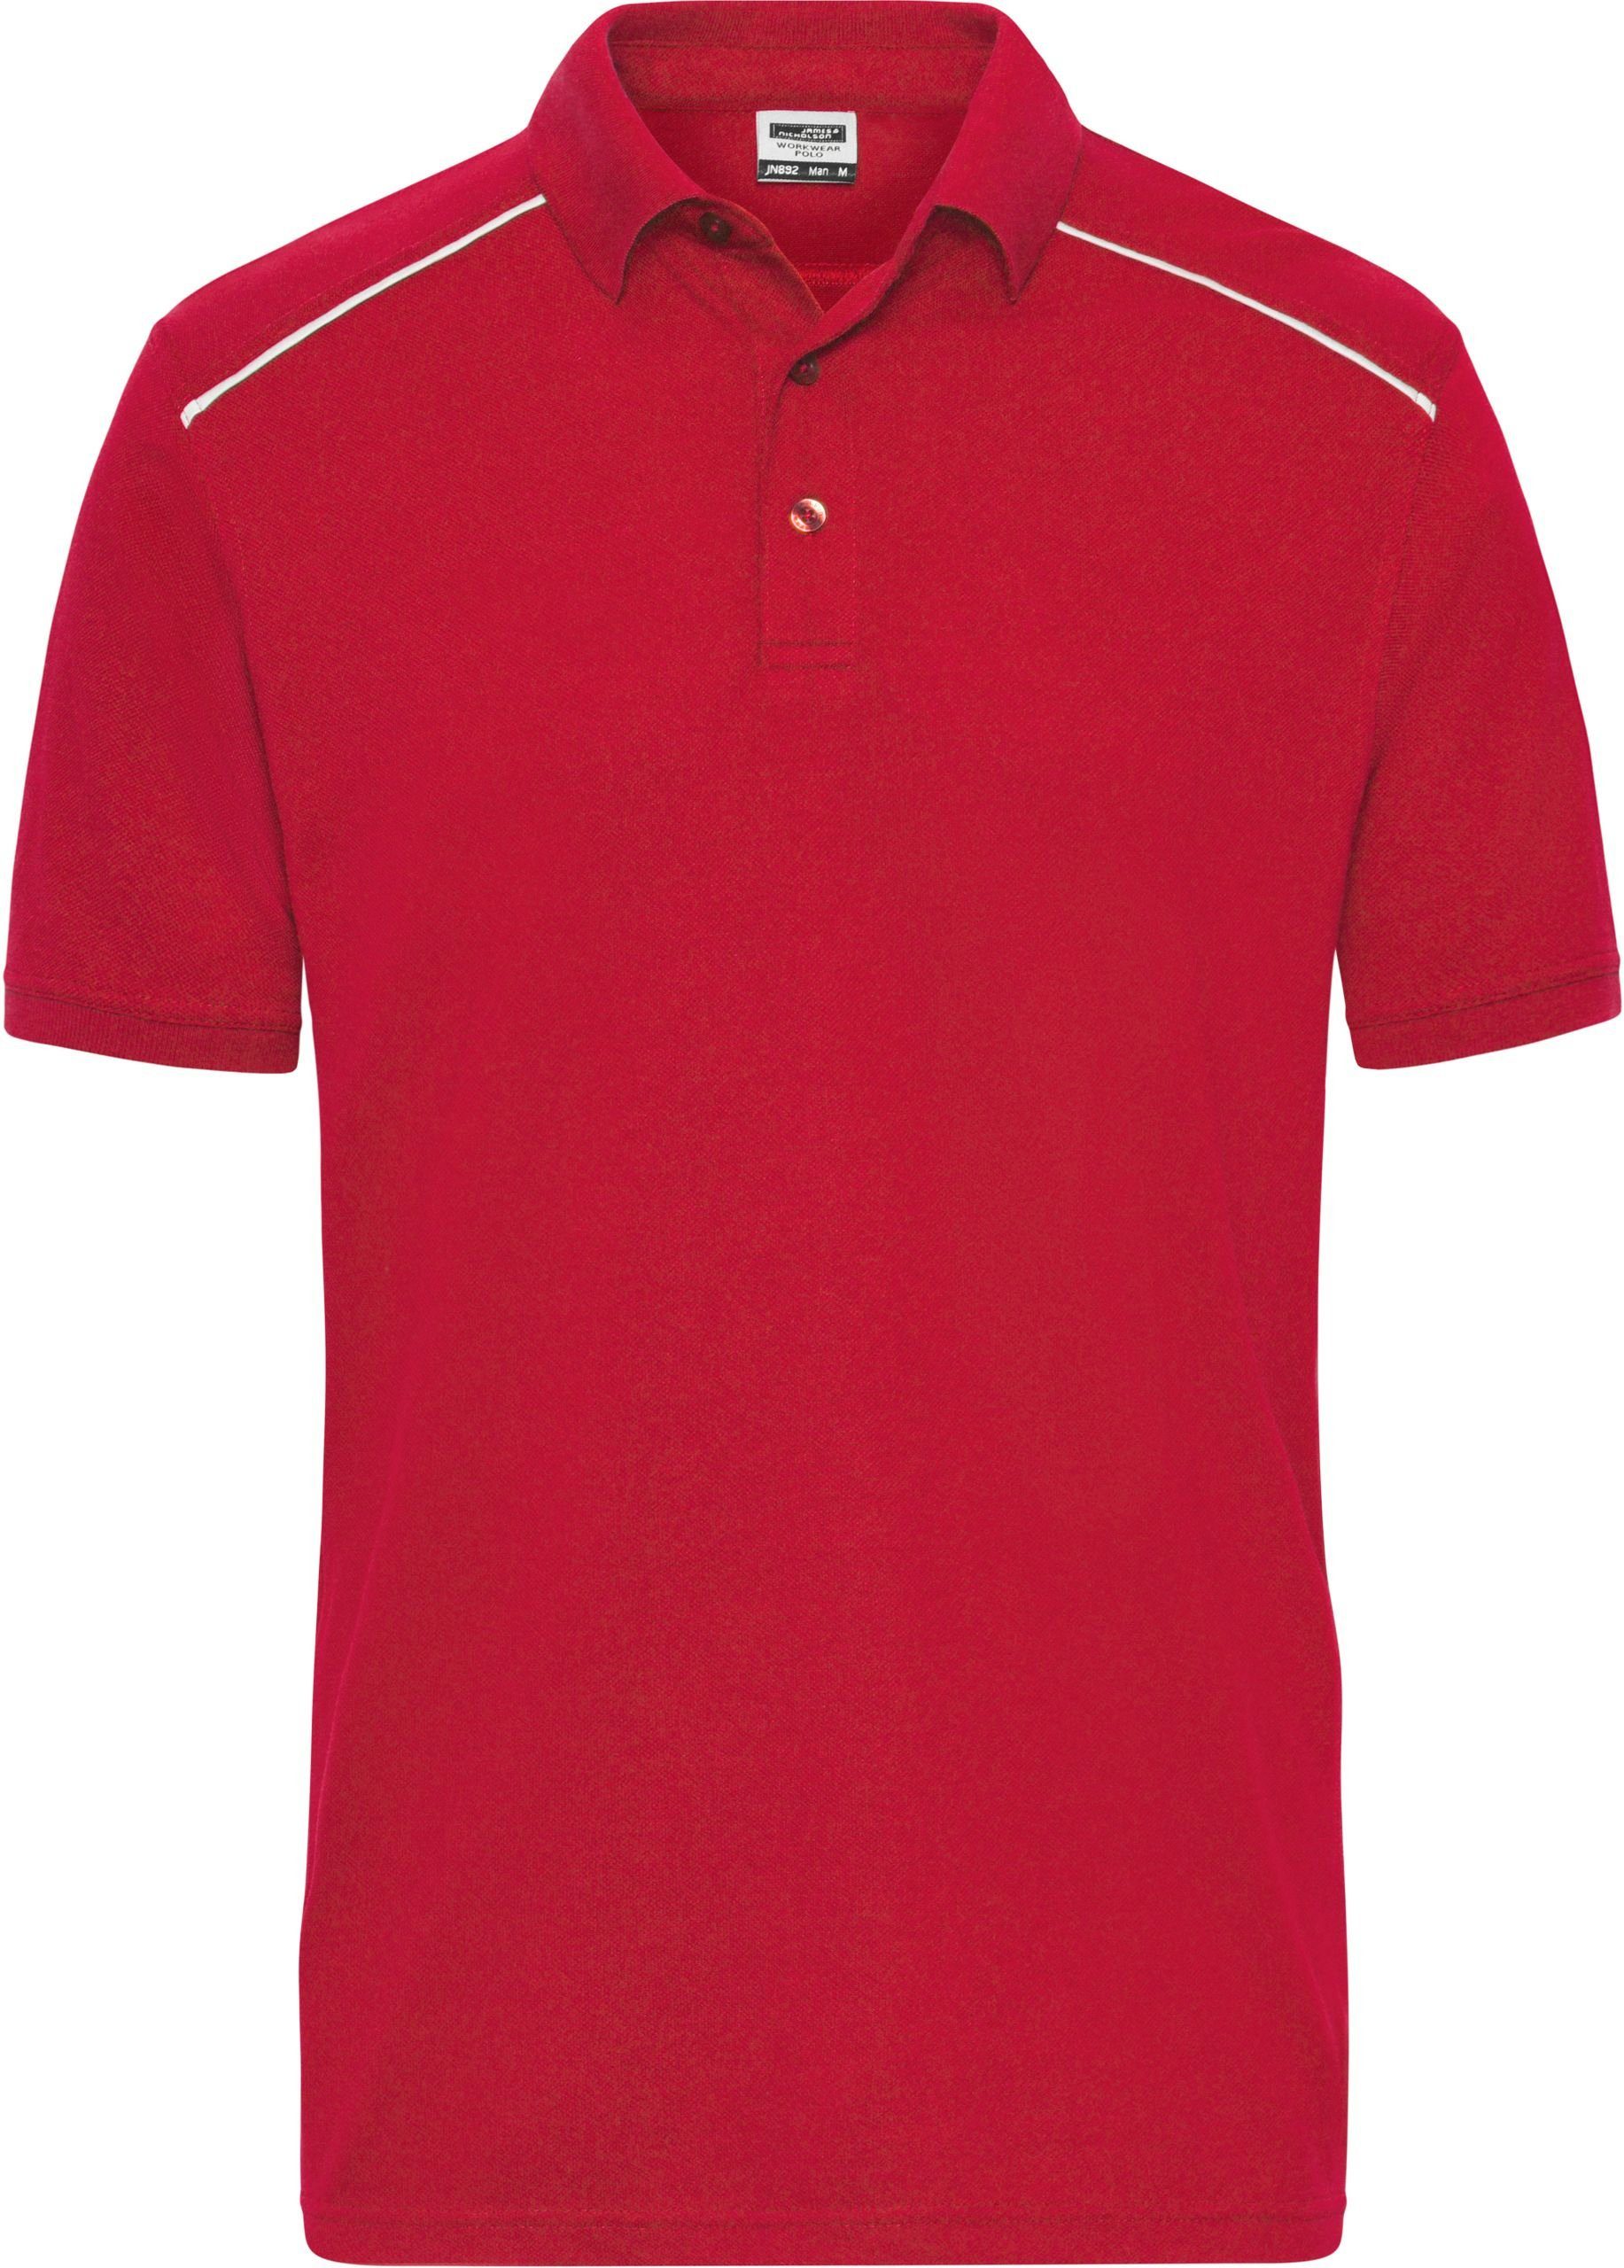 James & Nicholson Poloshirt Workwear Polo -Solid- FaS50892 auch in Übergrößen RED